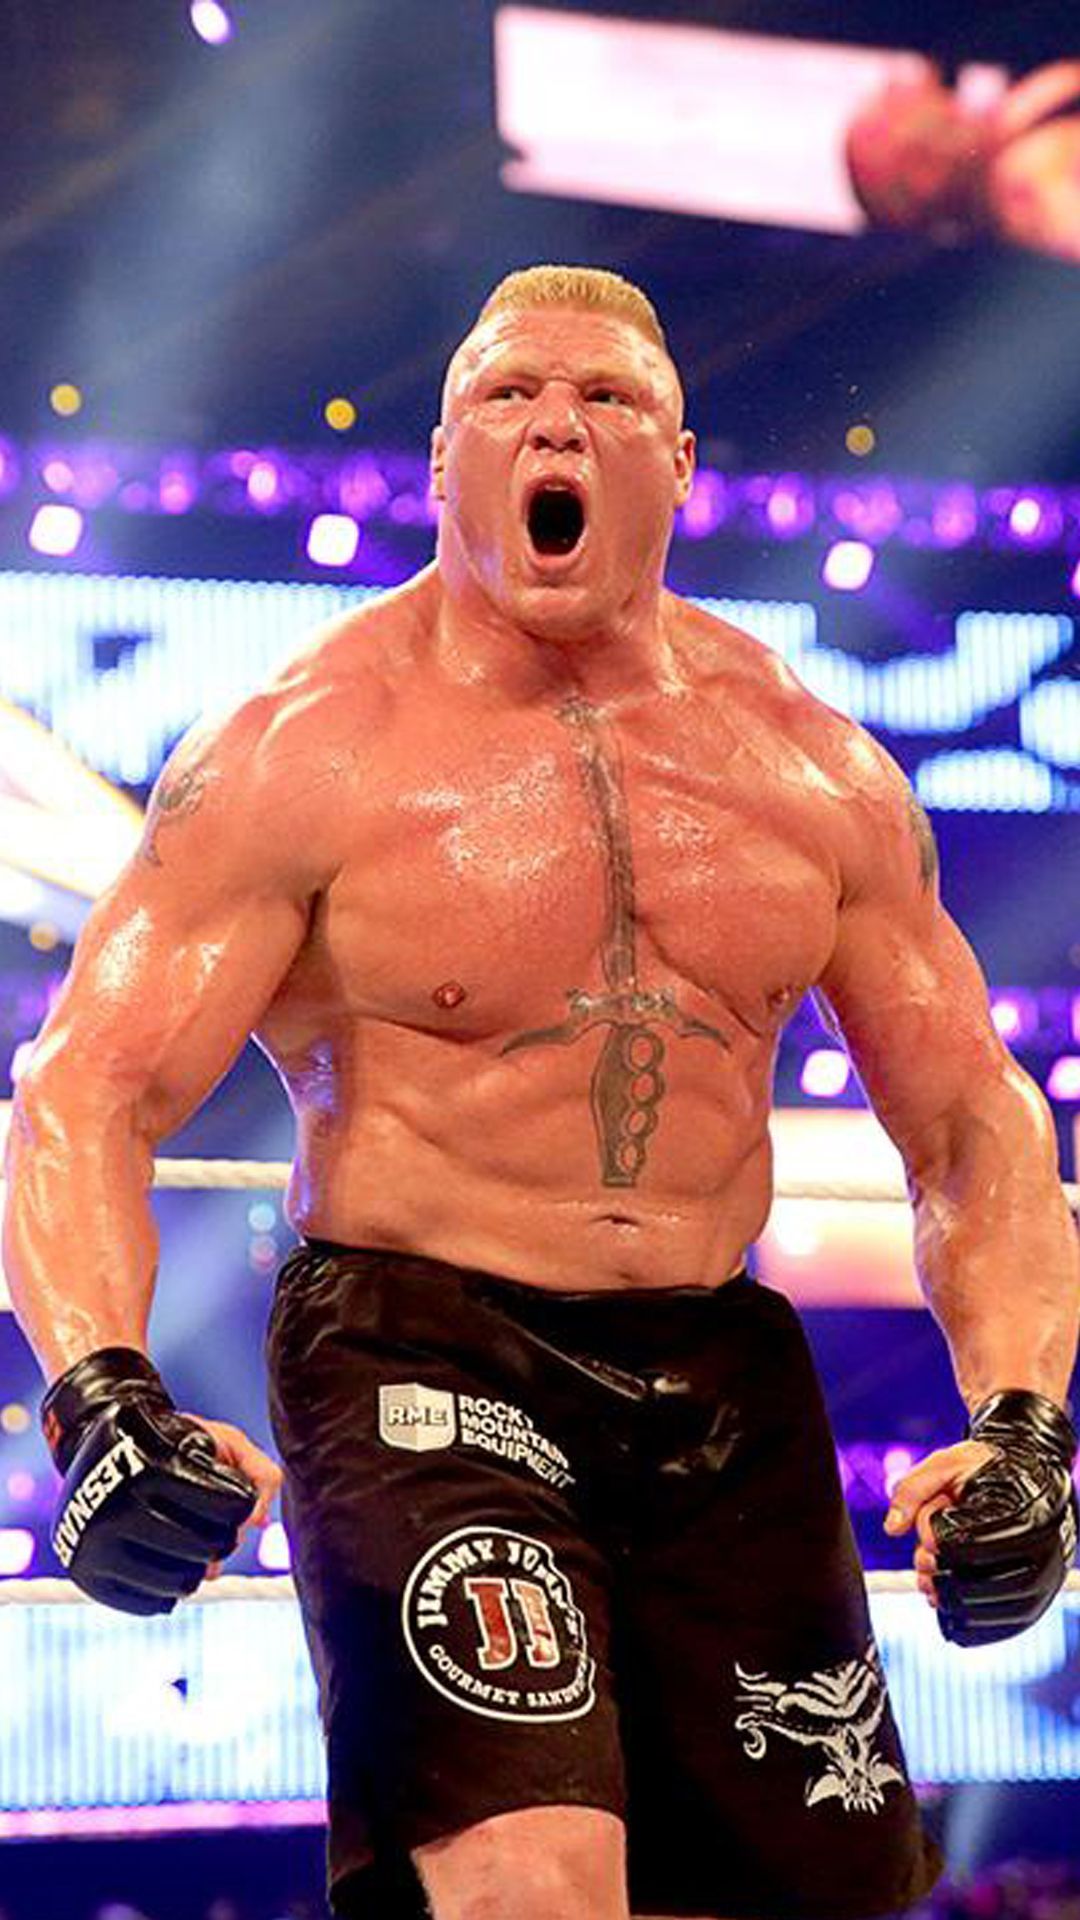 Brock Lesnar Wwe Background Image. Brock lesnar, Brock lesnar wwe, Brock lesnar ufc